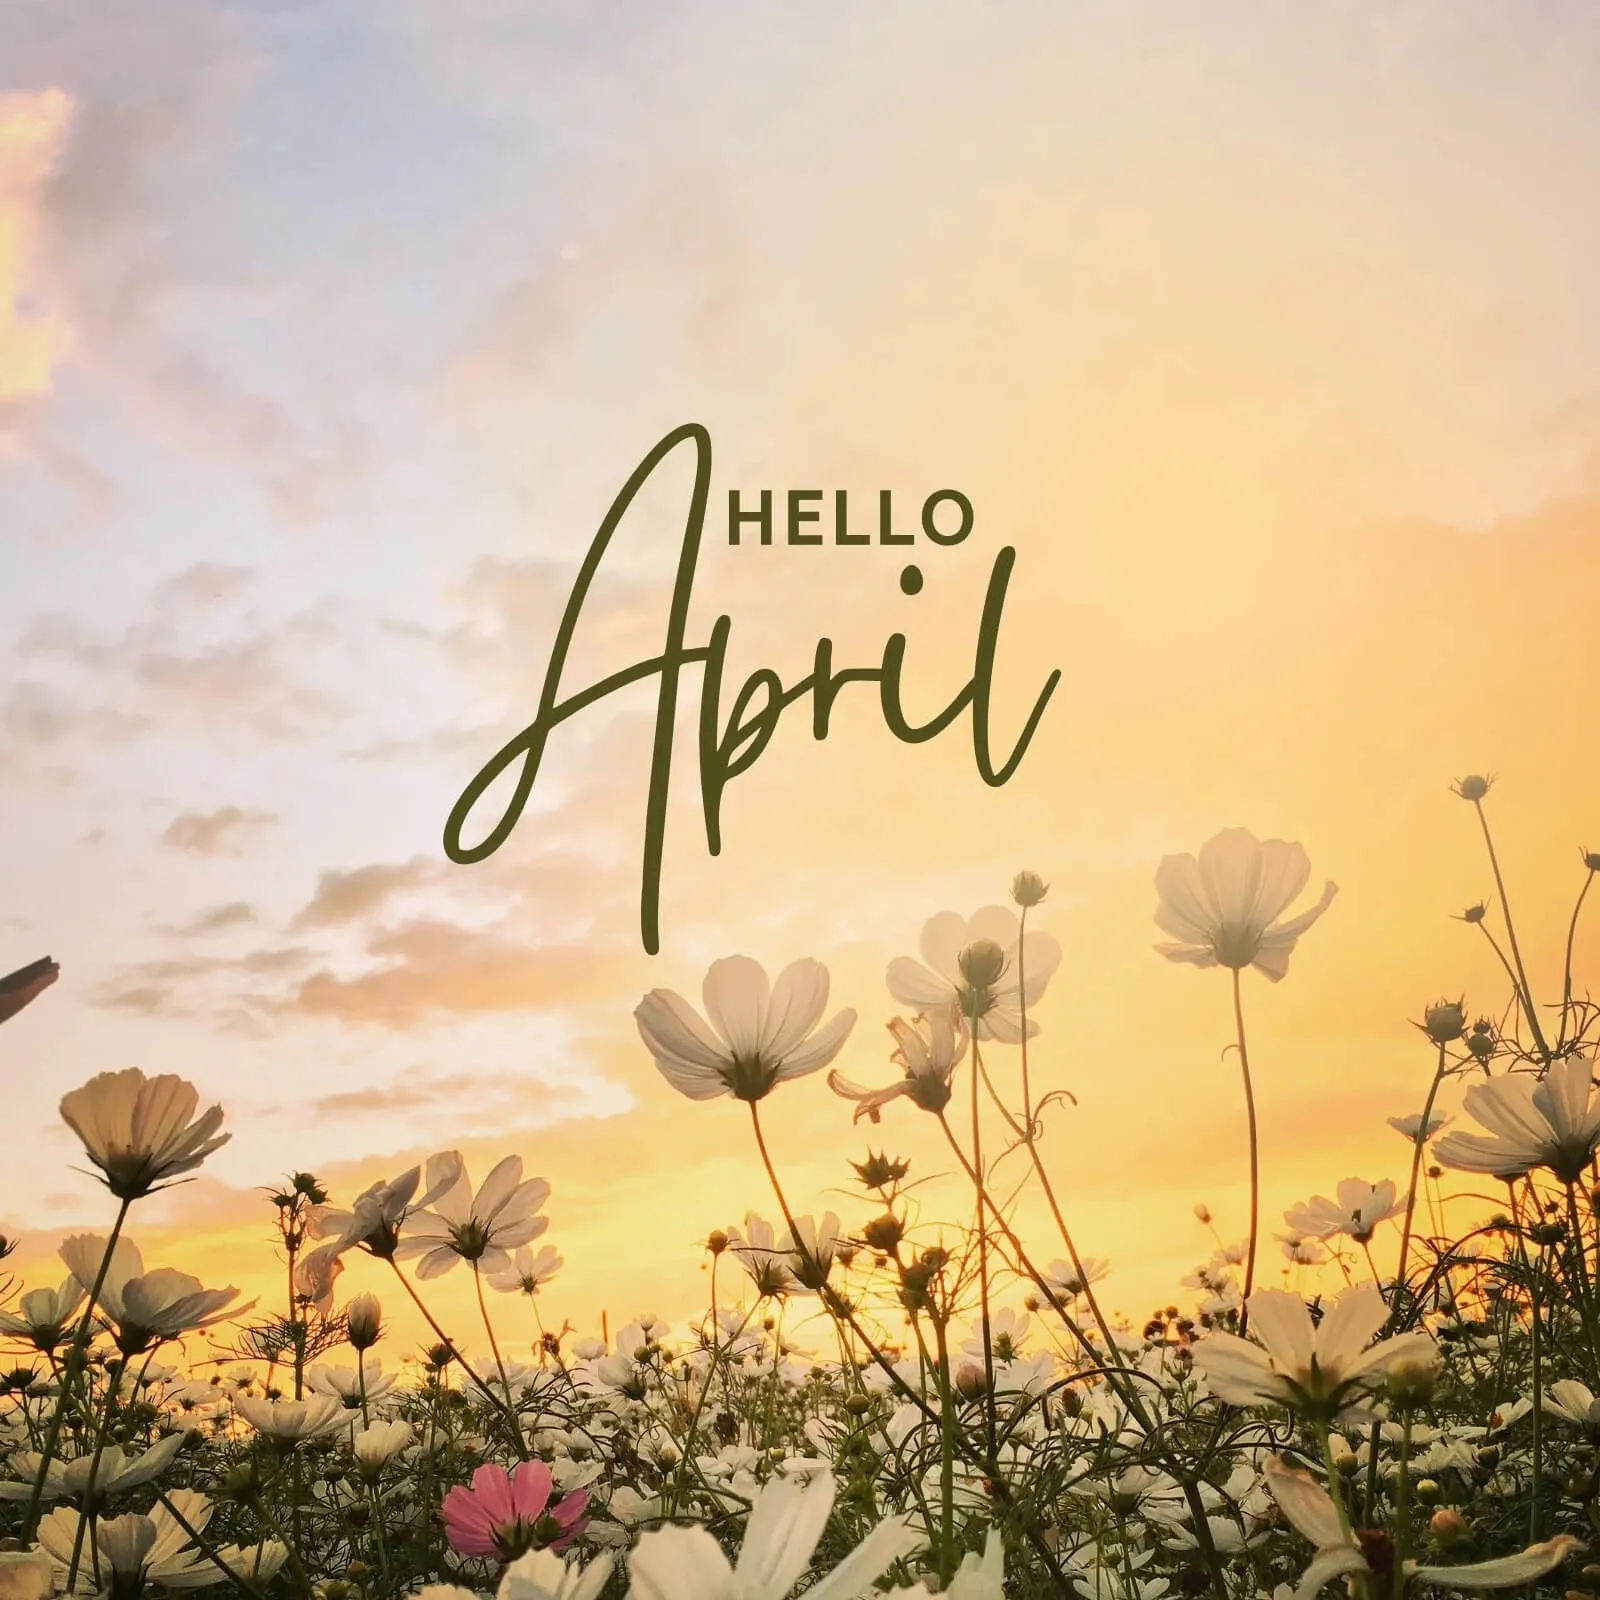 Tháng 4 là mùa gì? Tháng 4 có gì đặc biệt?